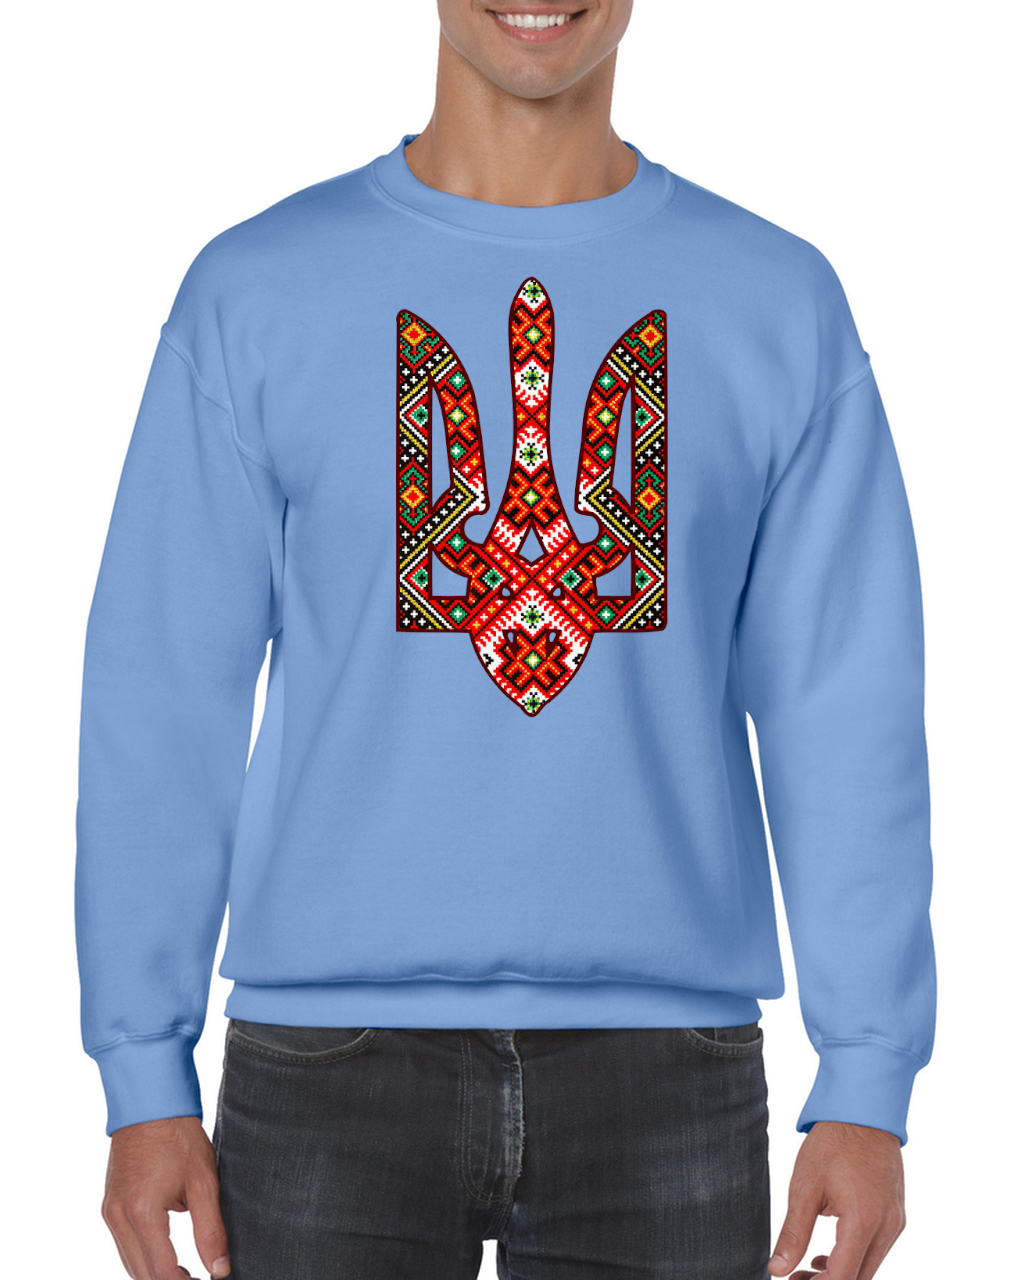 Adult unisex sweatshirt "Etno Tryzub"